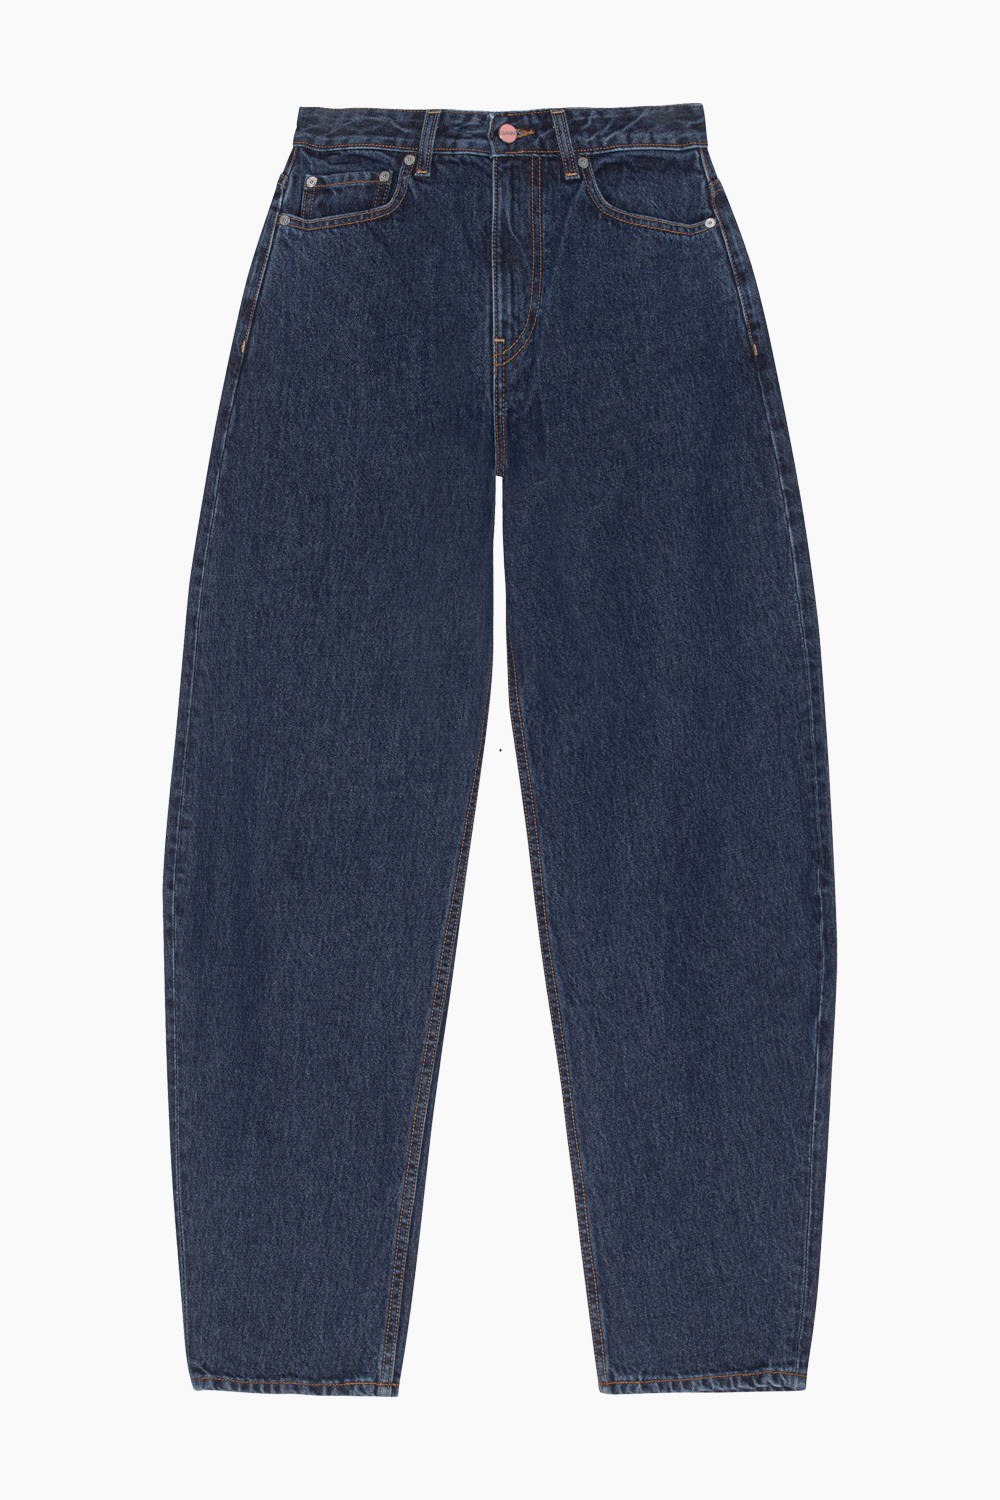 Se Stary Jeans - Dark Blue Stone - GANNI - Blå 25/34 hos QNTS.dk